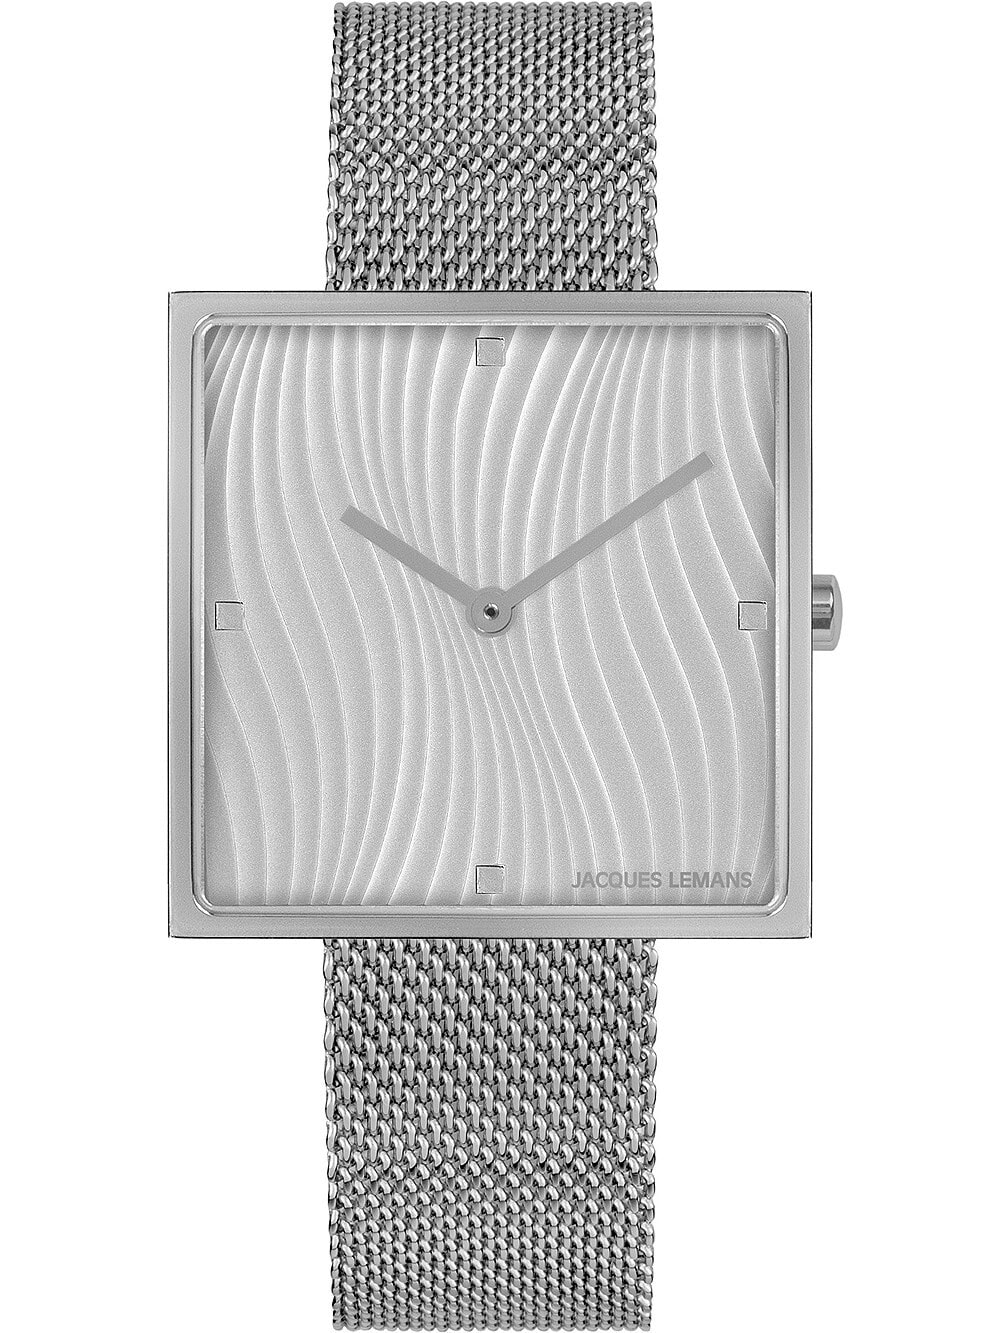 Женские наручные кварцевые часы Jacques Lemans со стальным квадратным корпусом. Браслет миланского плетения.